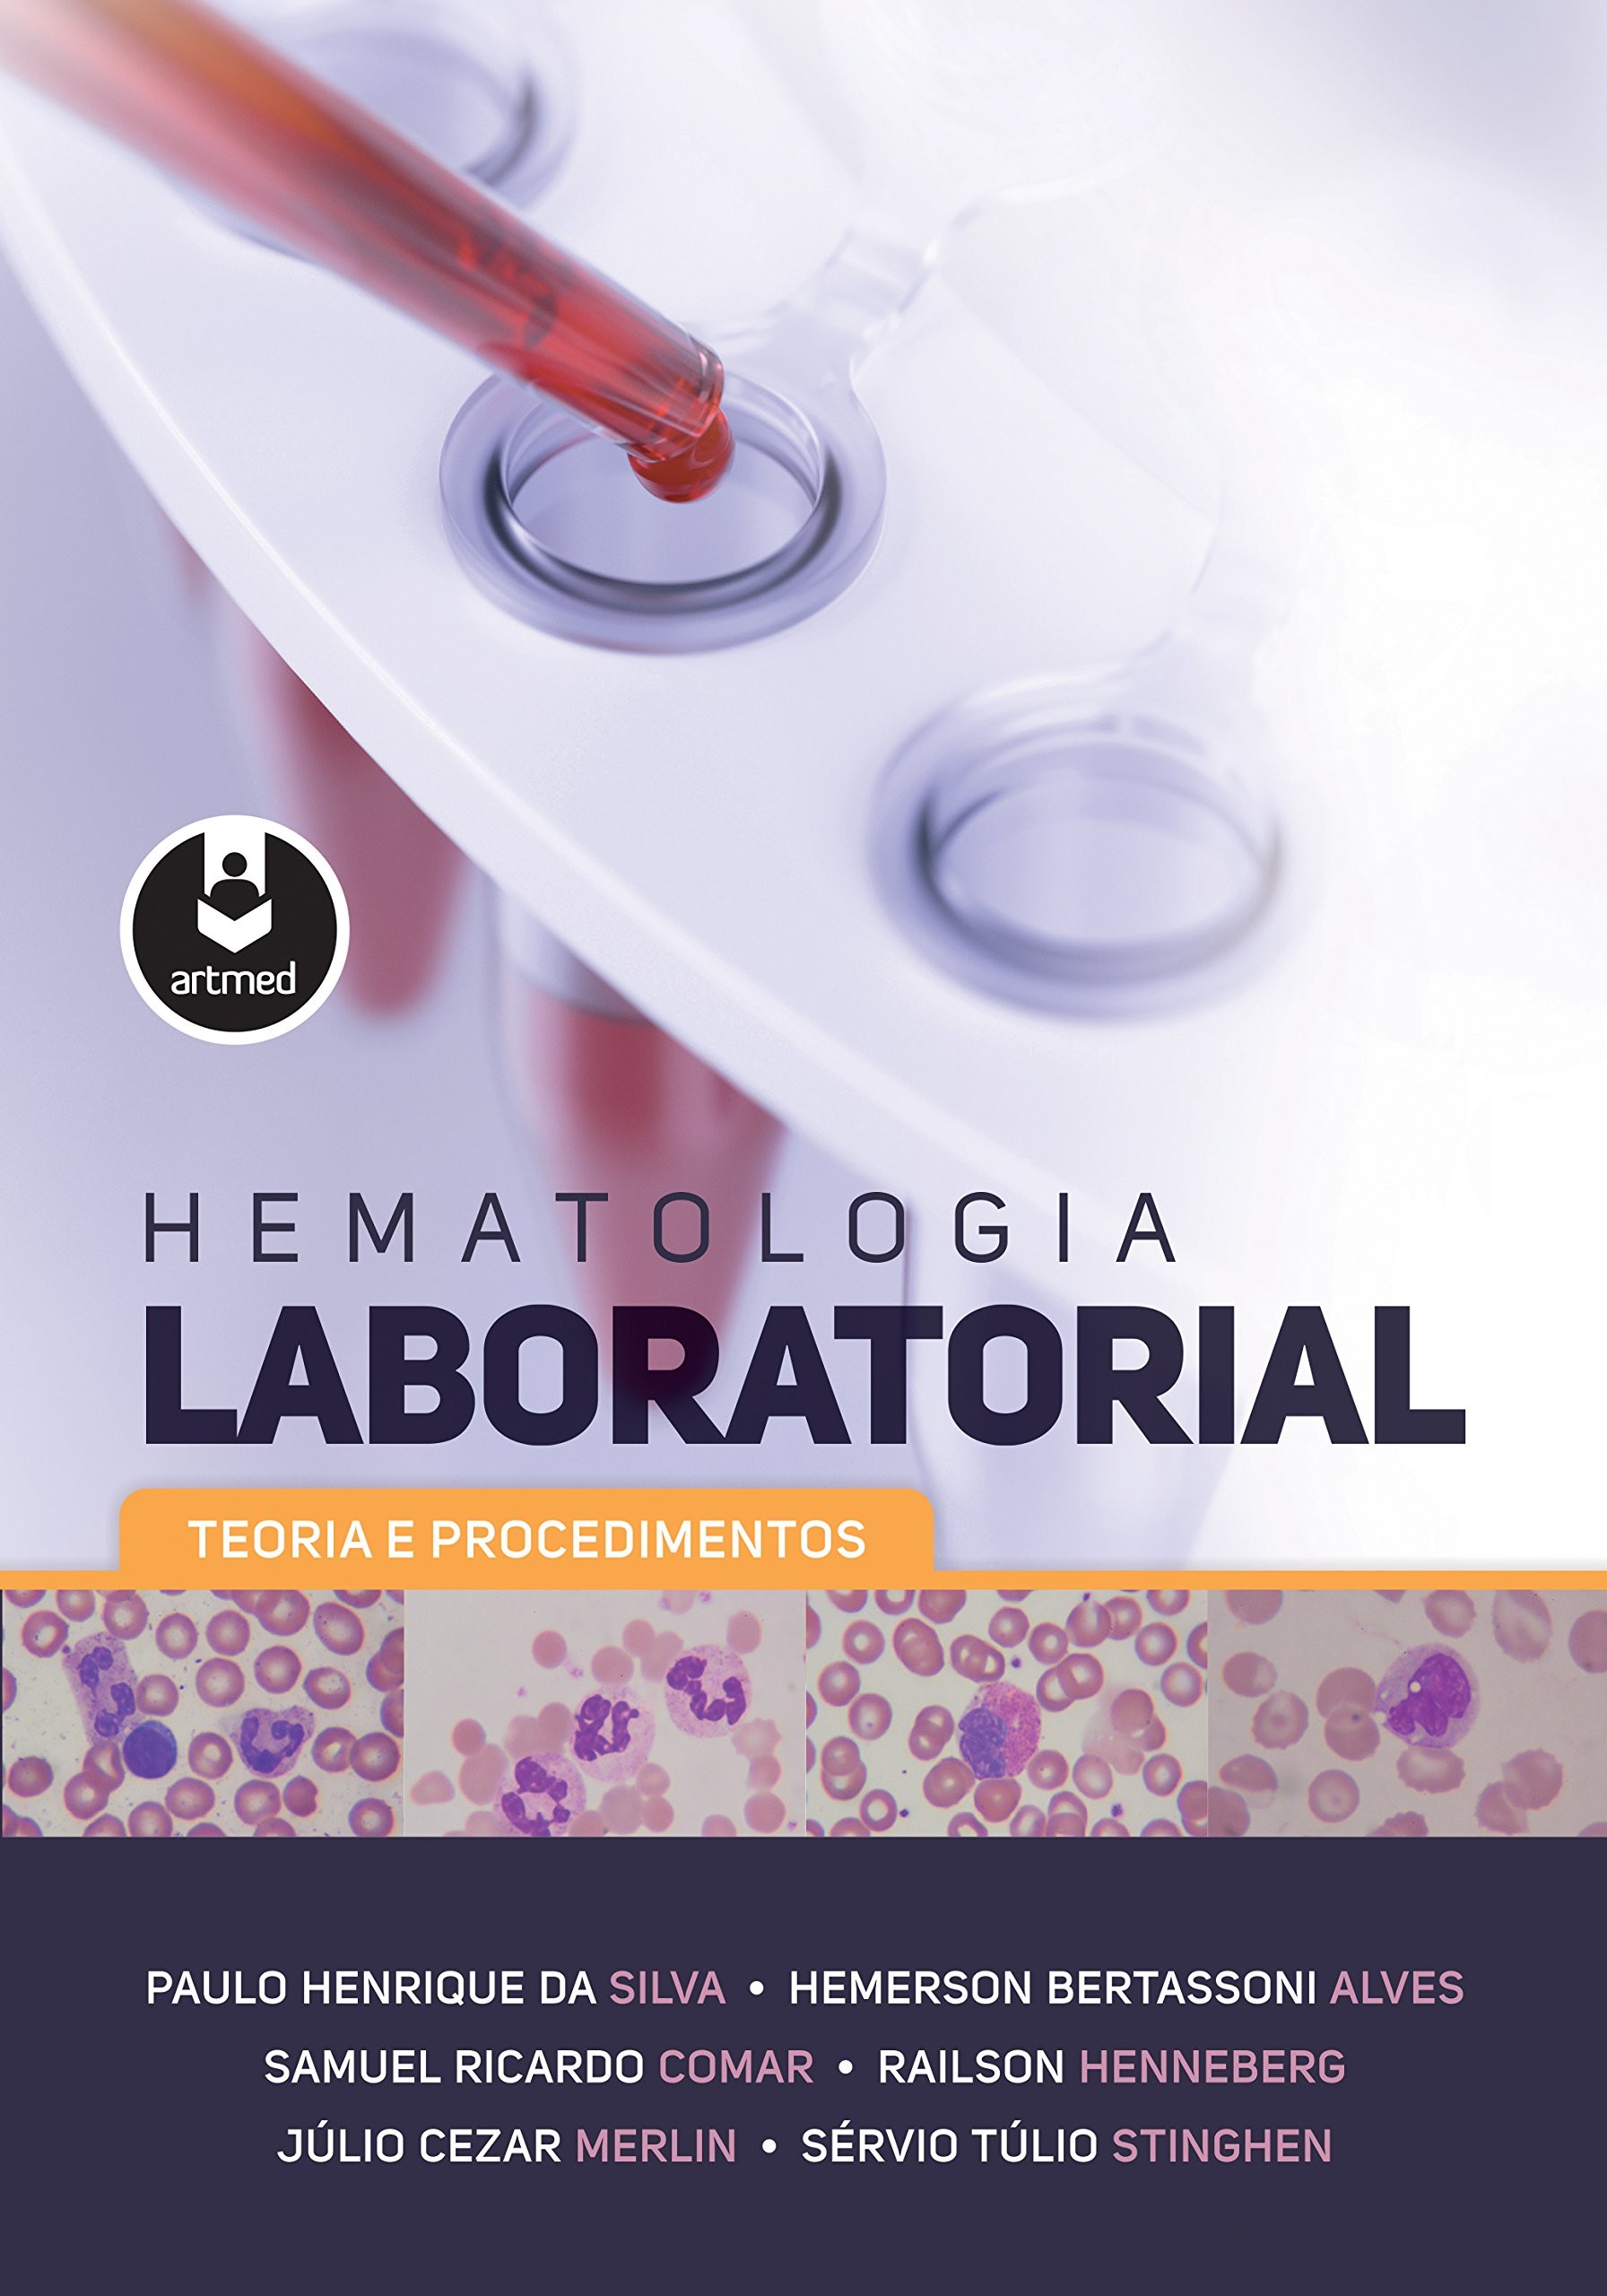 Hematologia Laboratorial - Teoria e Procedimentos